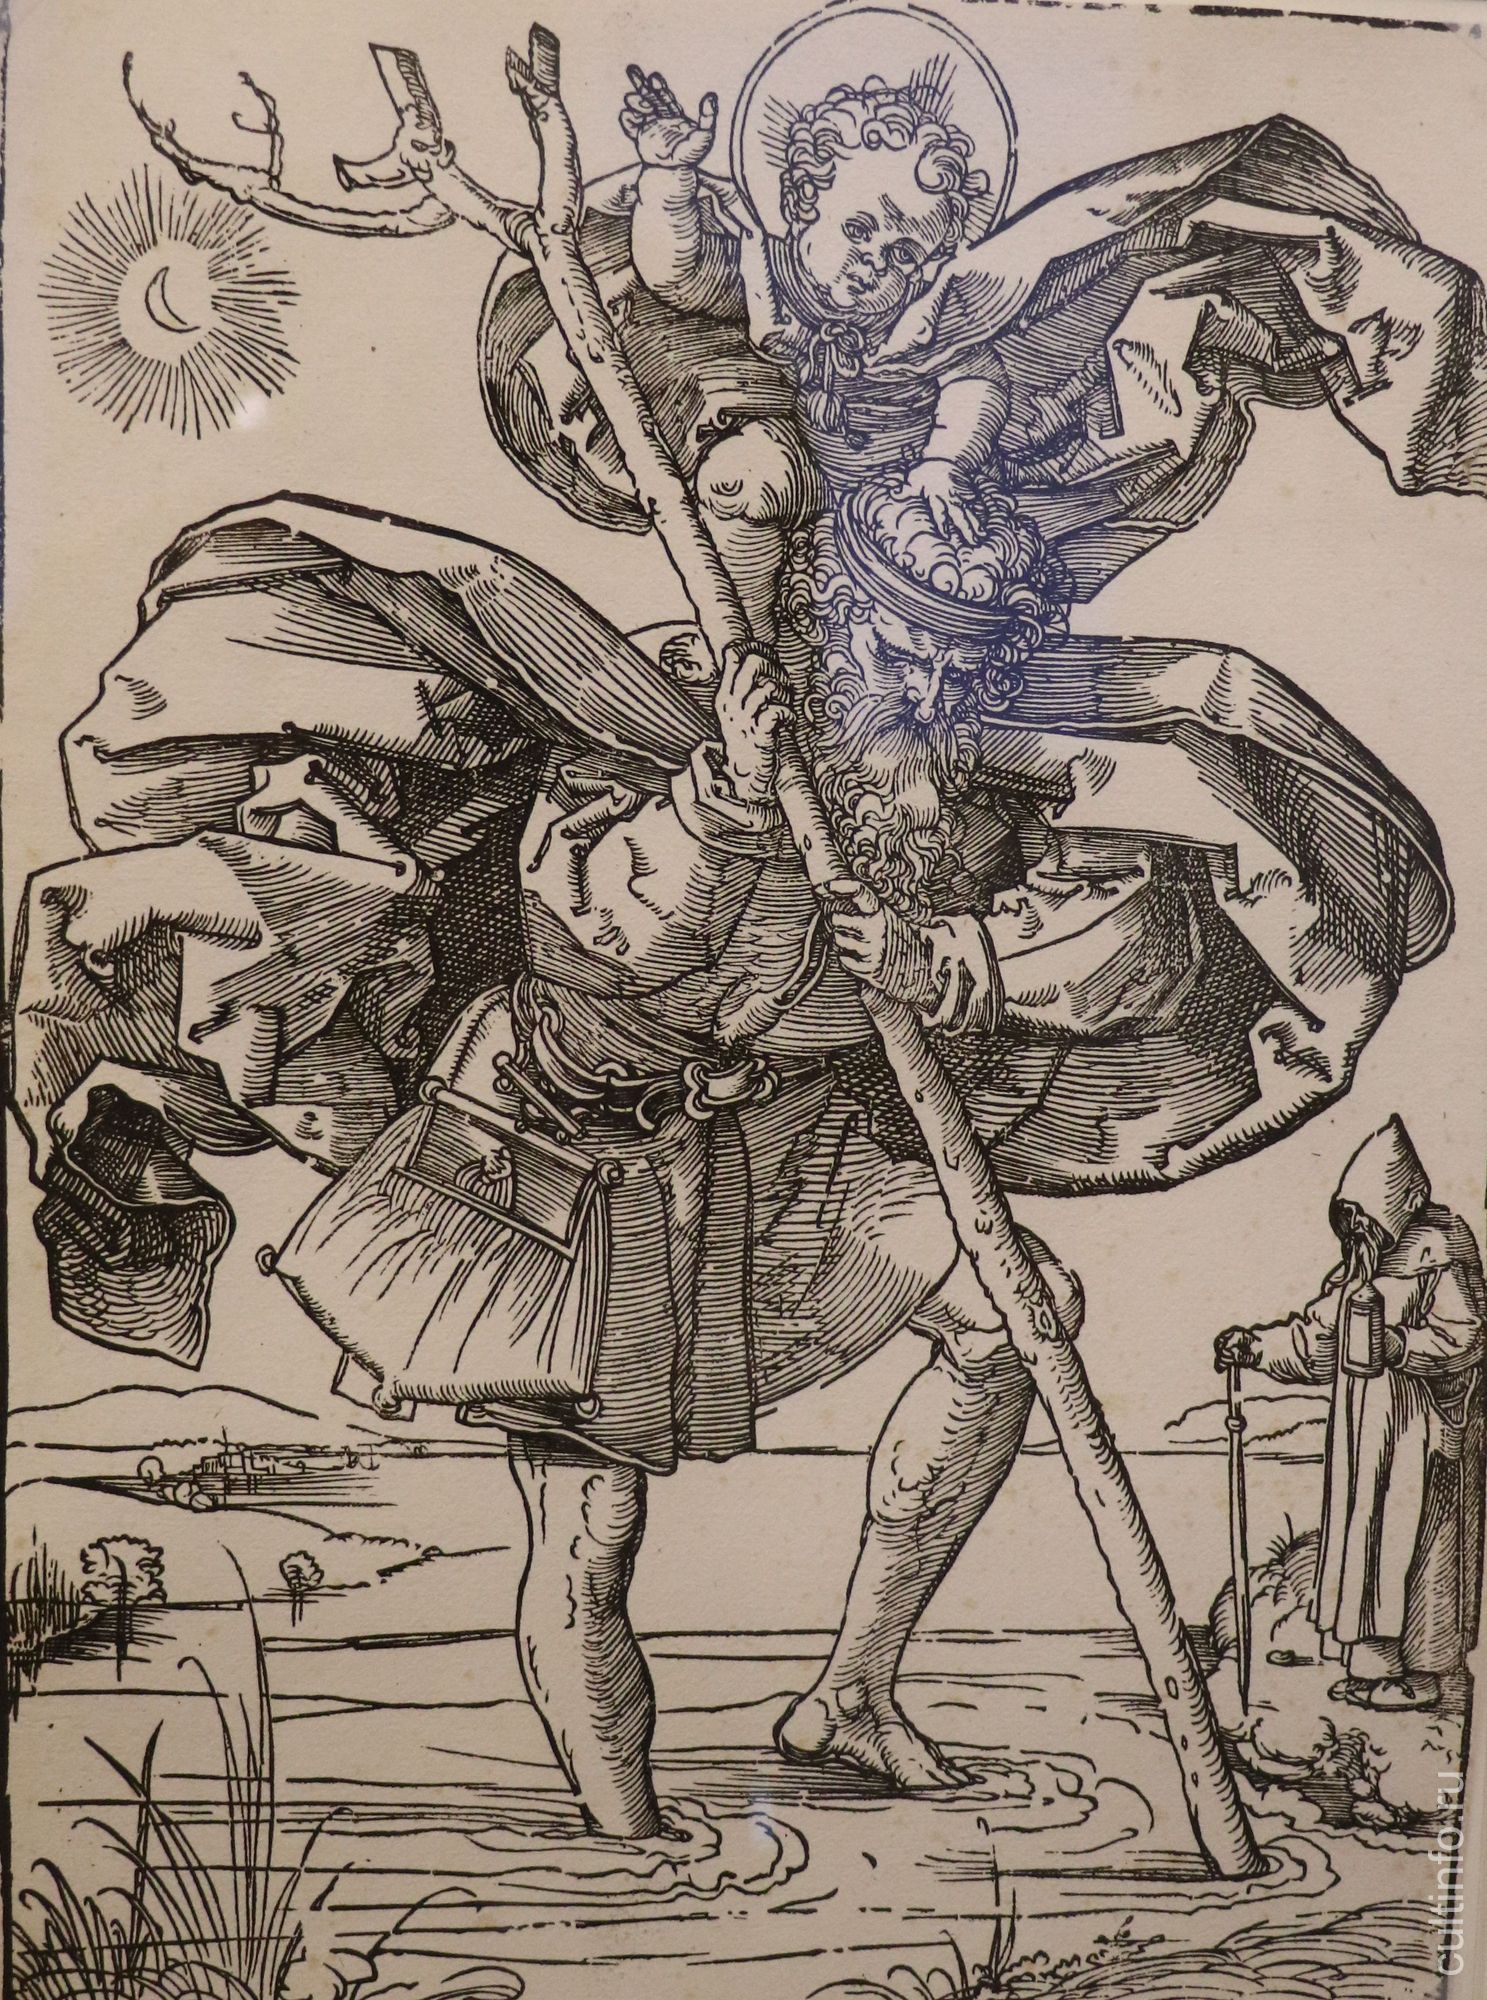 Г.З.Бехам. Святой Христофор в лунном свете. 1528 г.